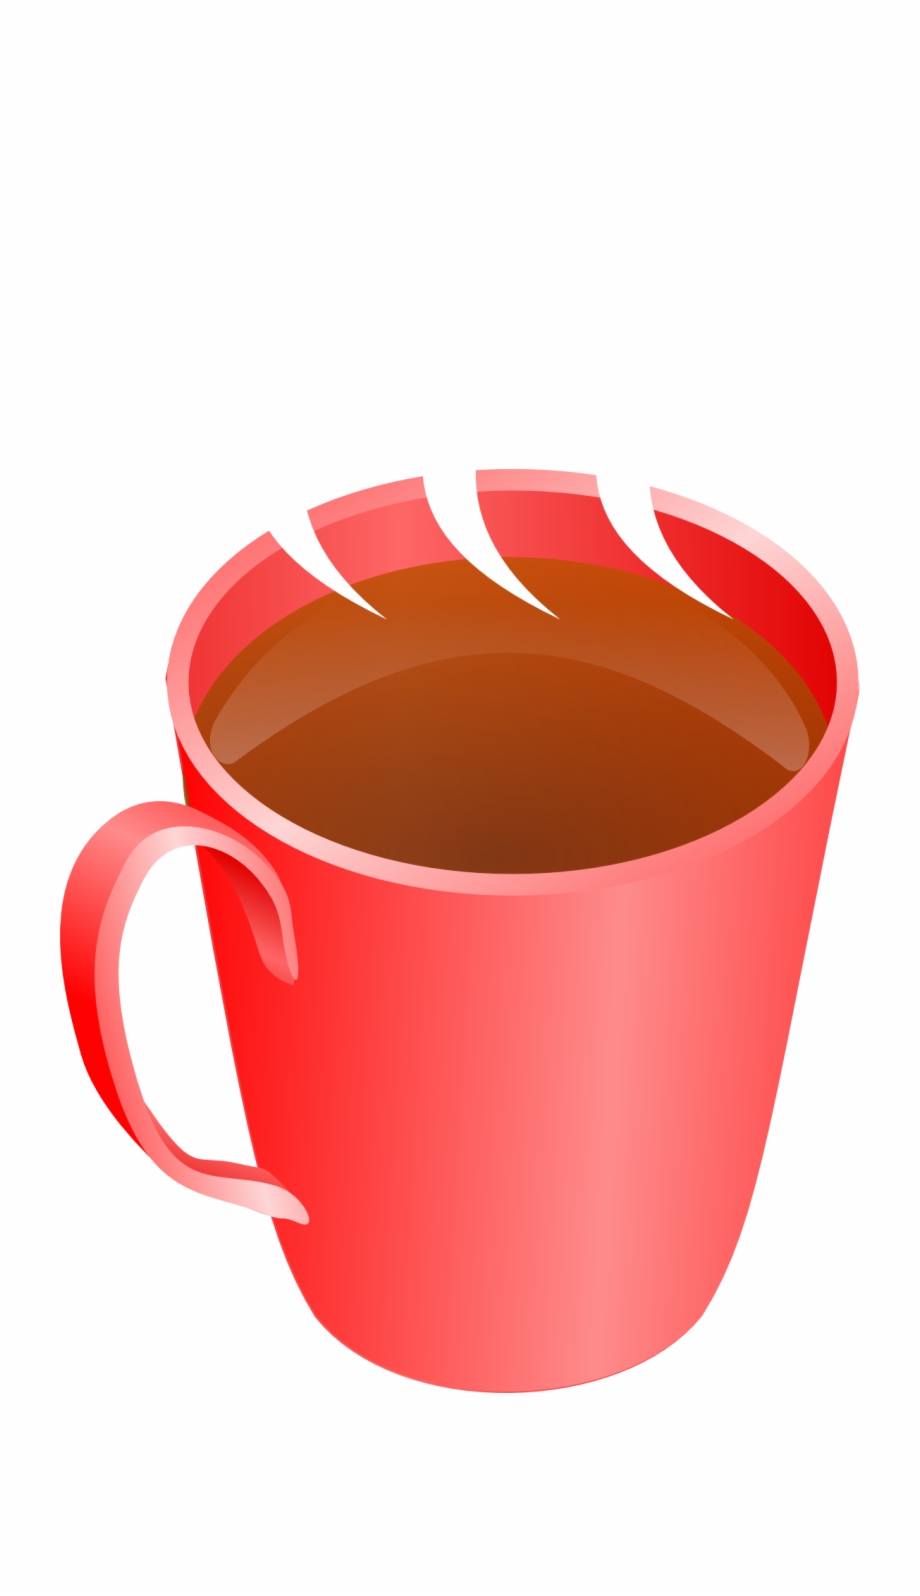 Clip Royalty Free Hot Chocolate Mug Clipart.